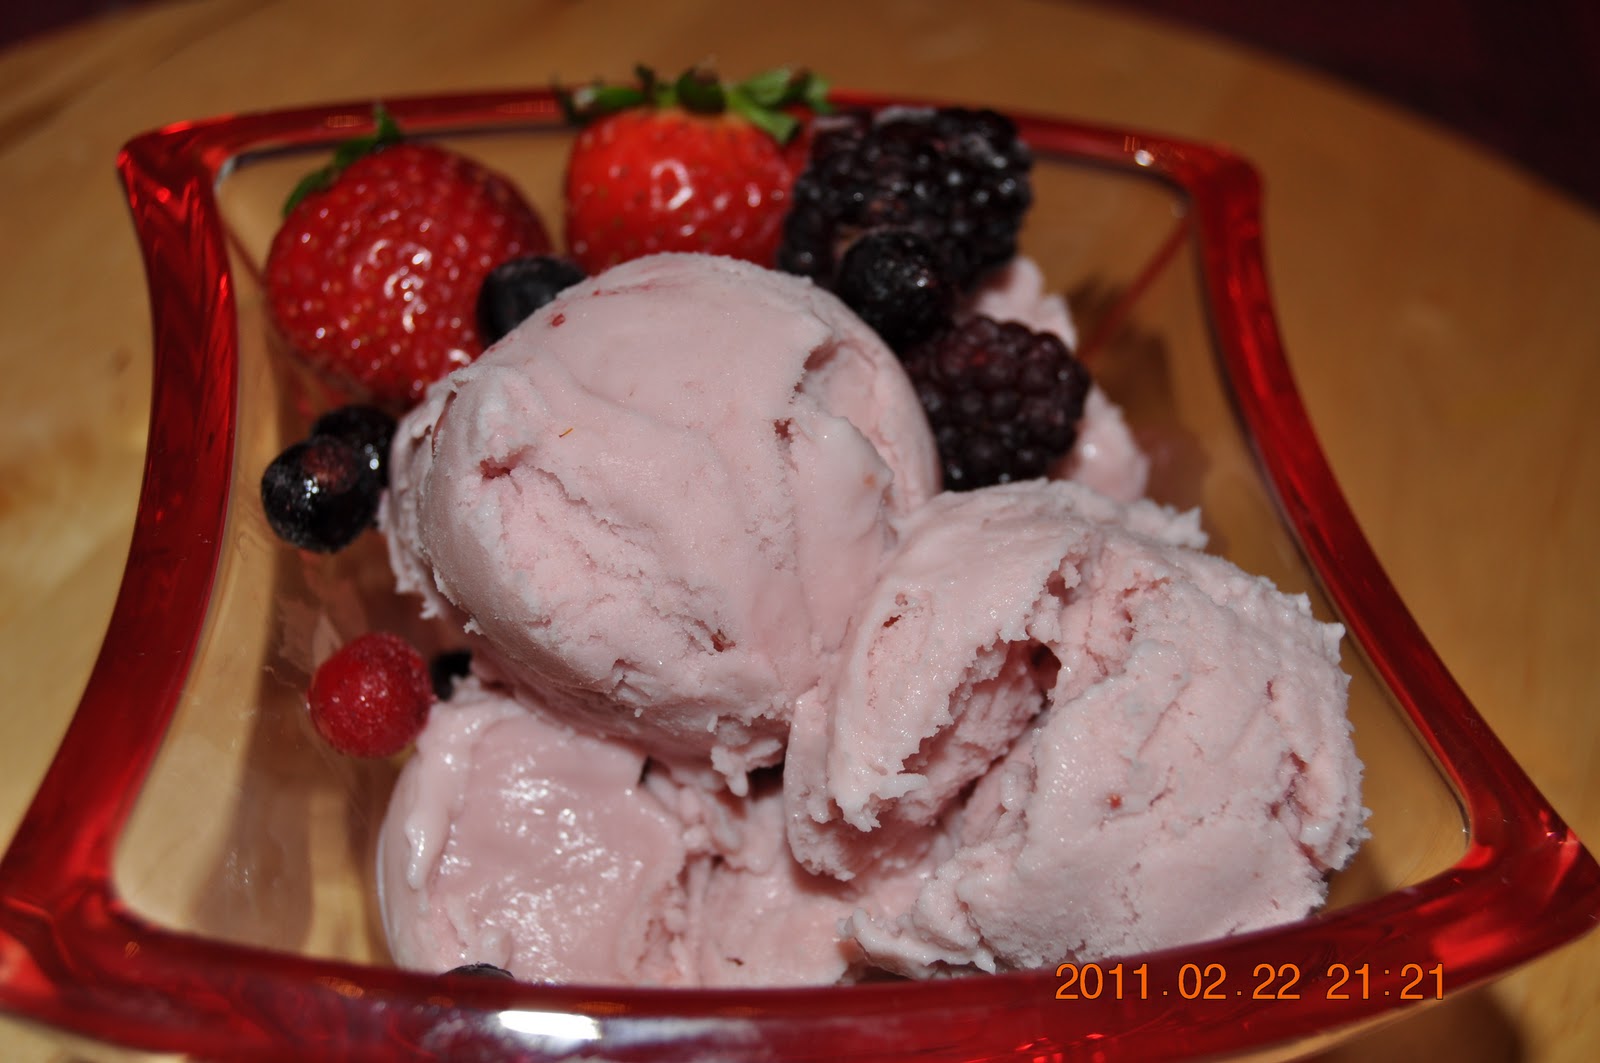 لذت آشپزی بستنی میوه ای Red Cherries Ice Cream